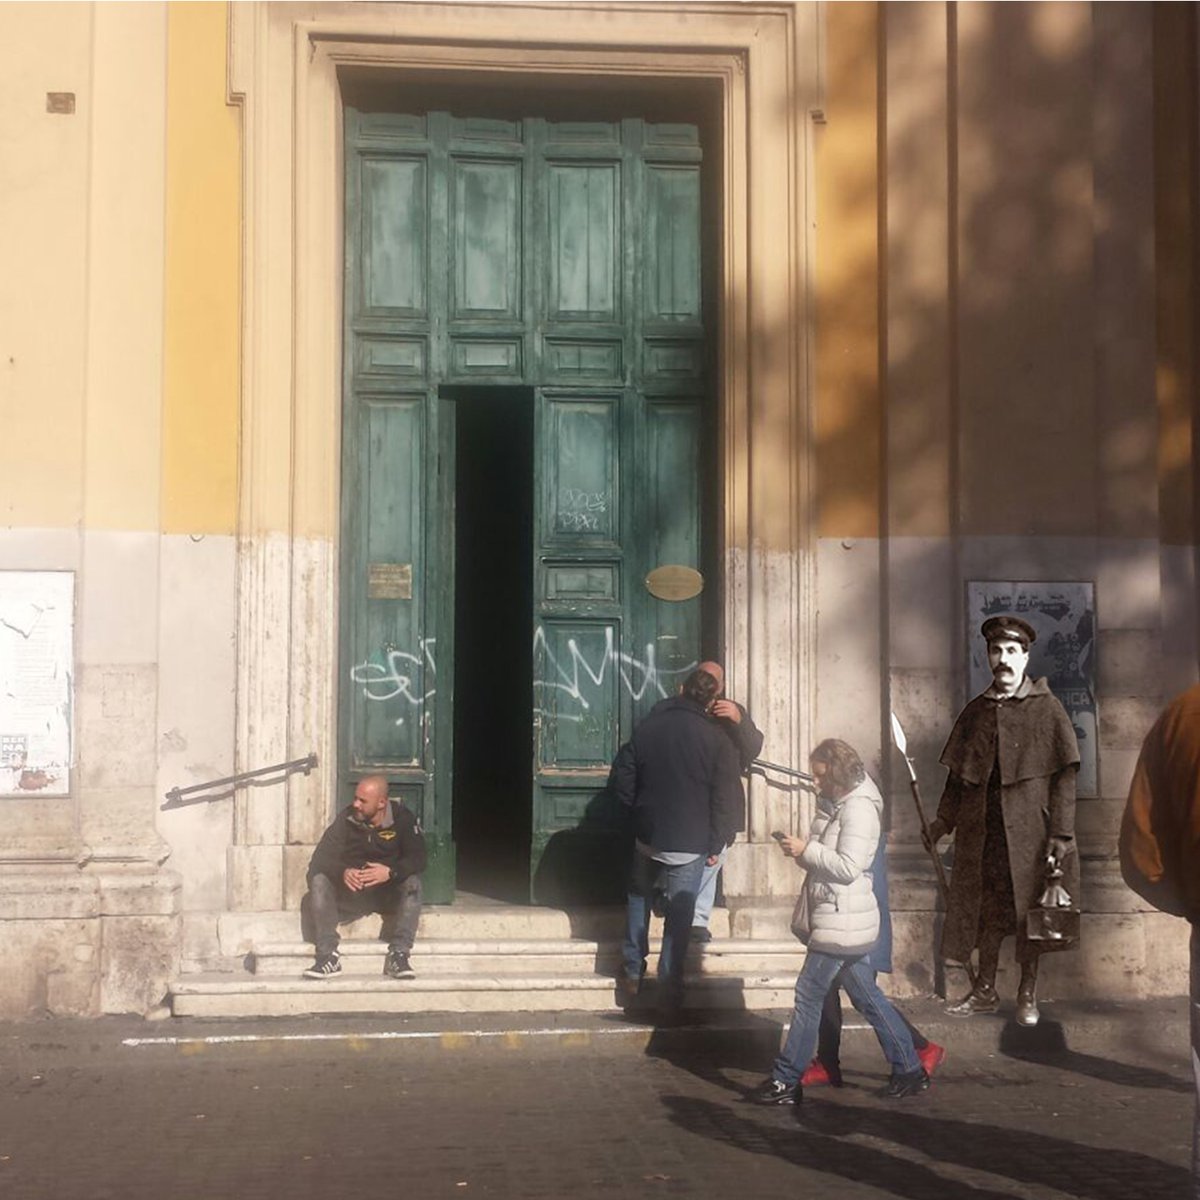 Buon weekend!
#doors #italy #rome #onlydoors #dolcevita #romanlife #weloverome #door #doorsofinstagram